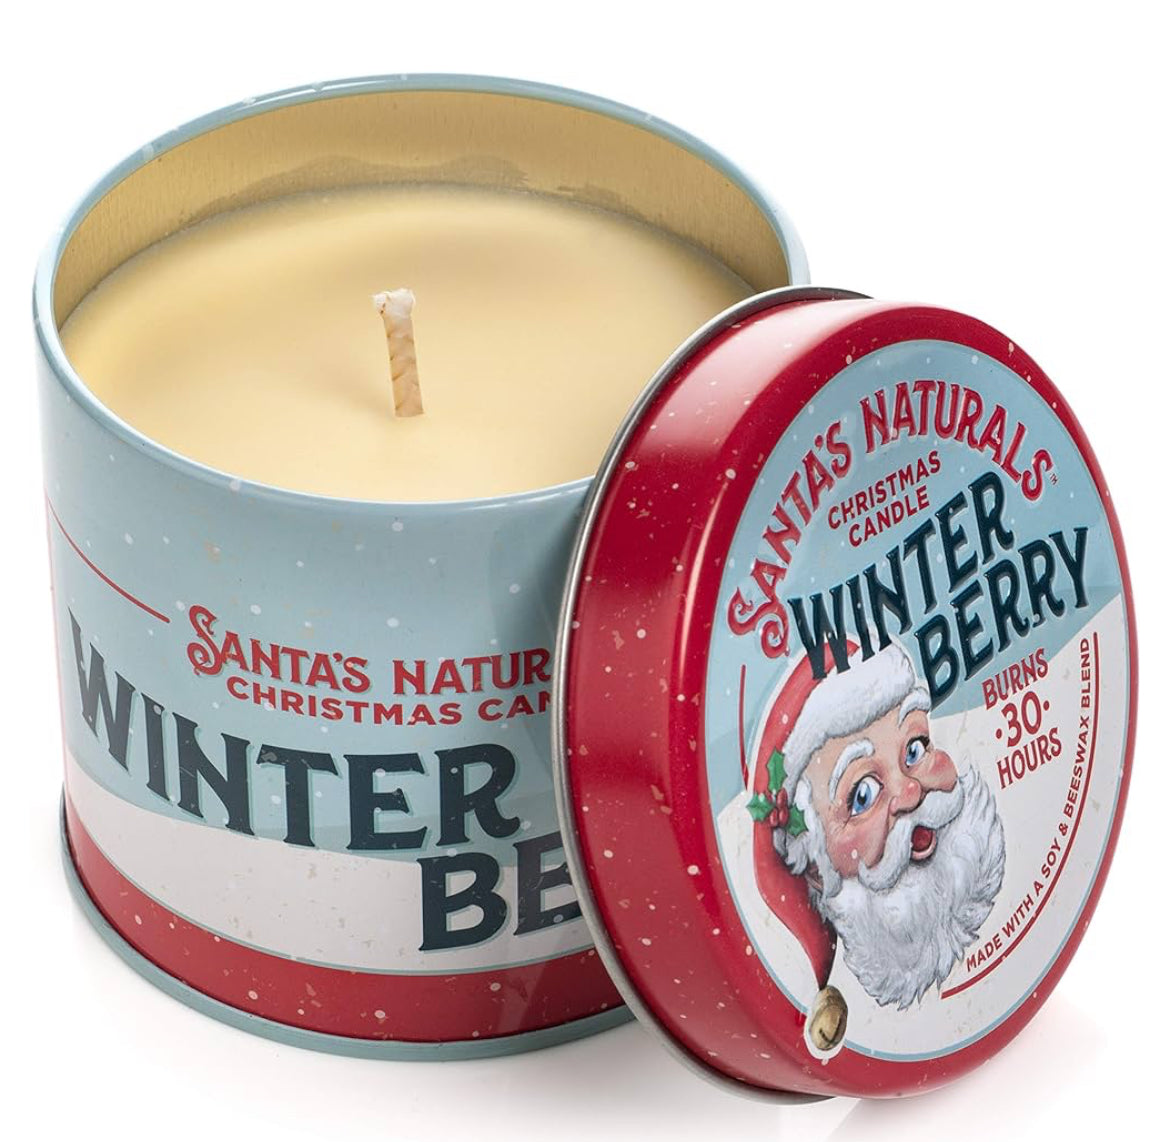 Santa's Naturals 9 oz. candle - Winter Berry